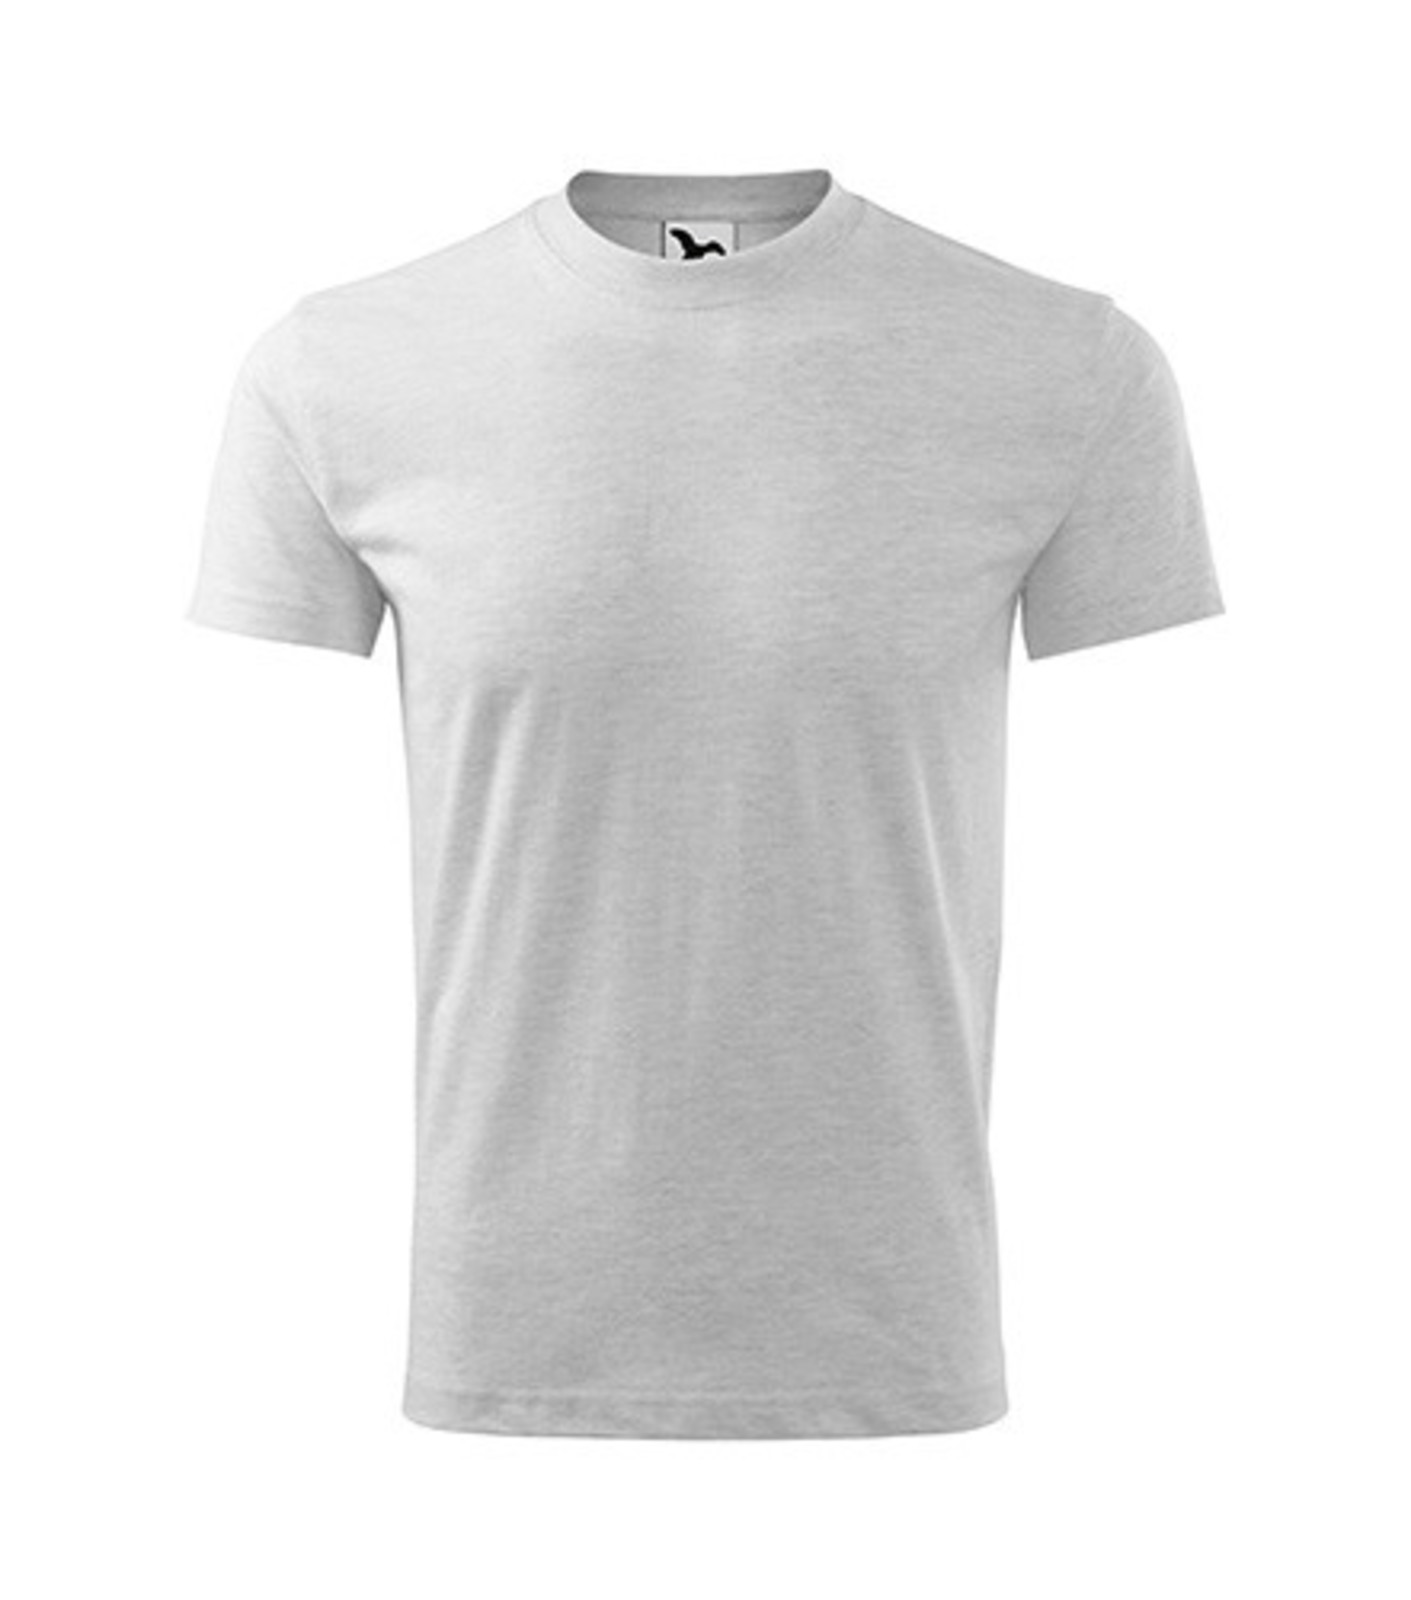 Detské tričko Malfini Basic 138 - veľkosť: 110, farba: svetlosivý melír